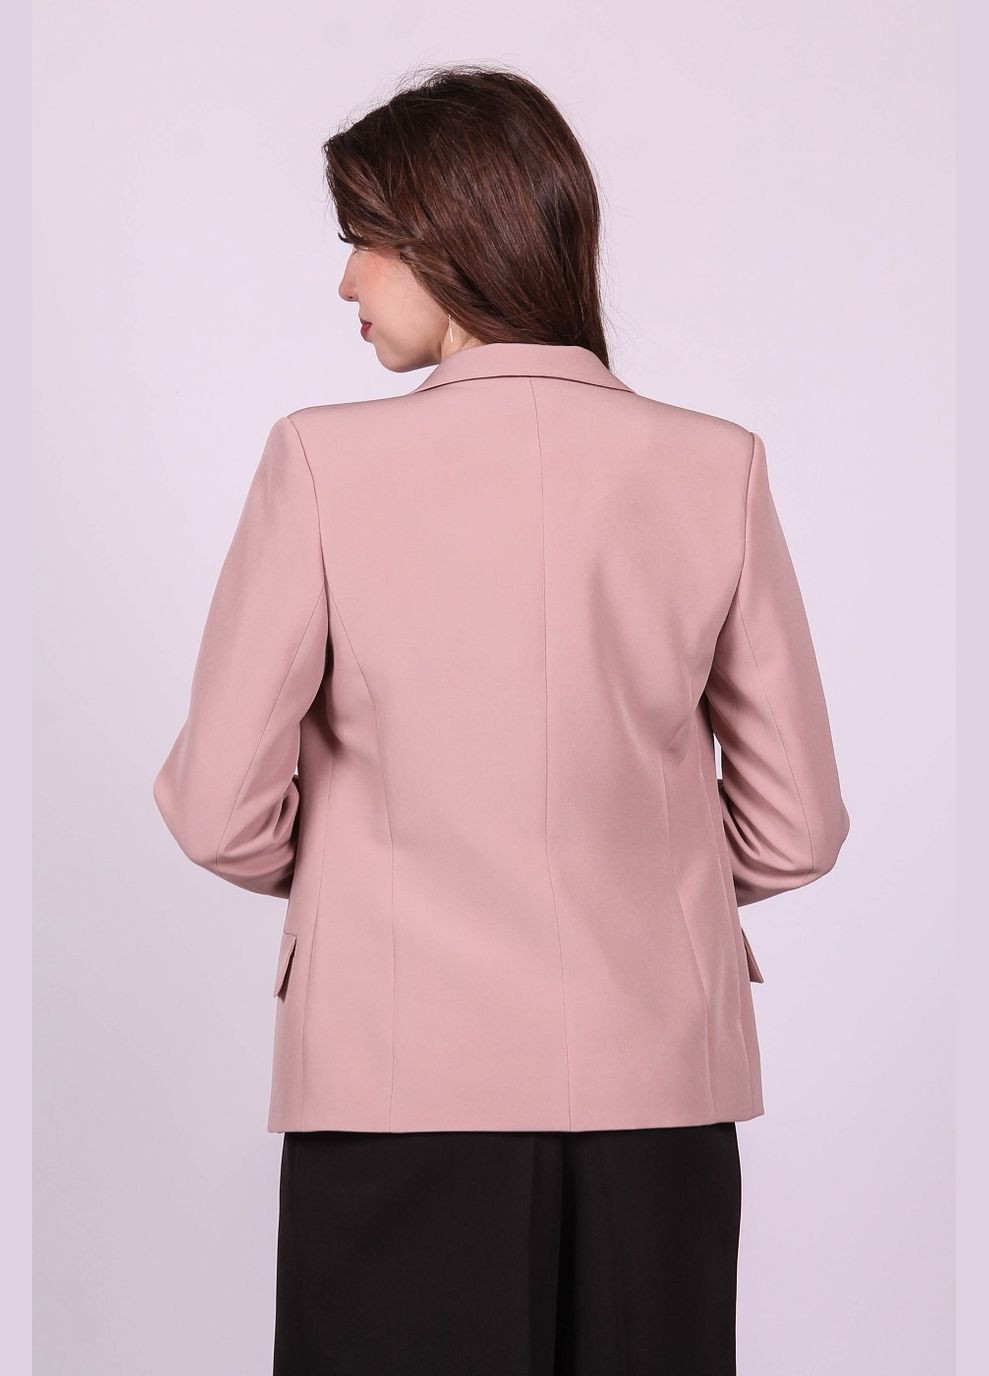 Светло-коричневый женский пиджак укороченный женский 037 креп капучино Актуаль - демисезонный